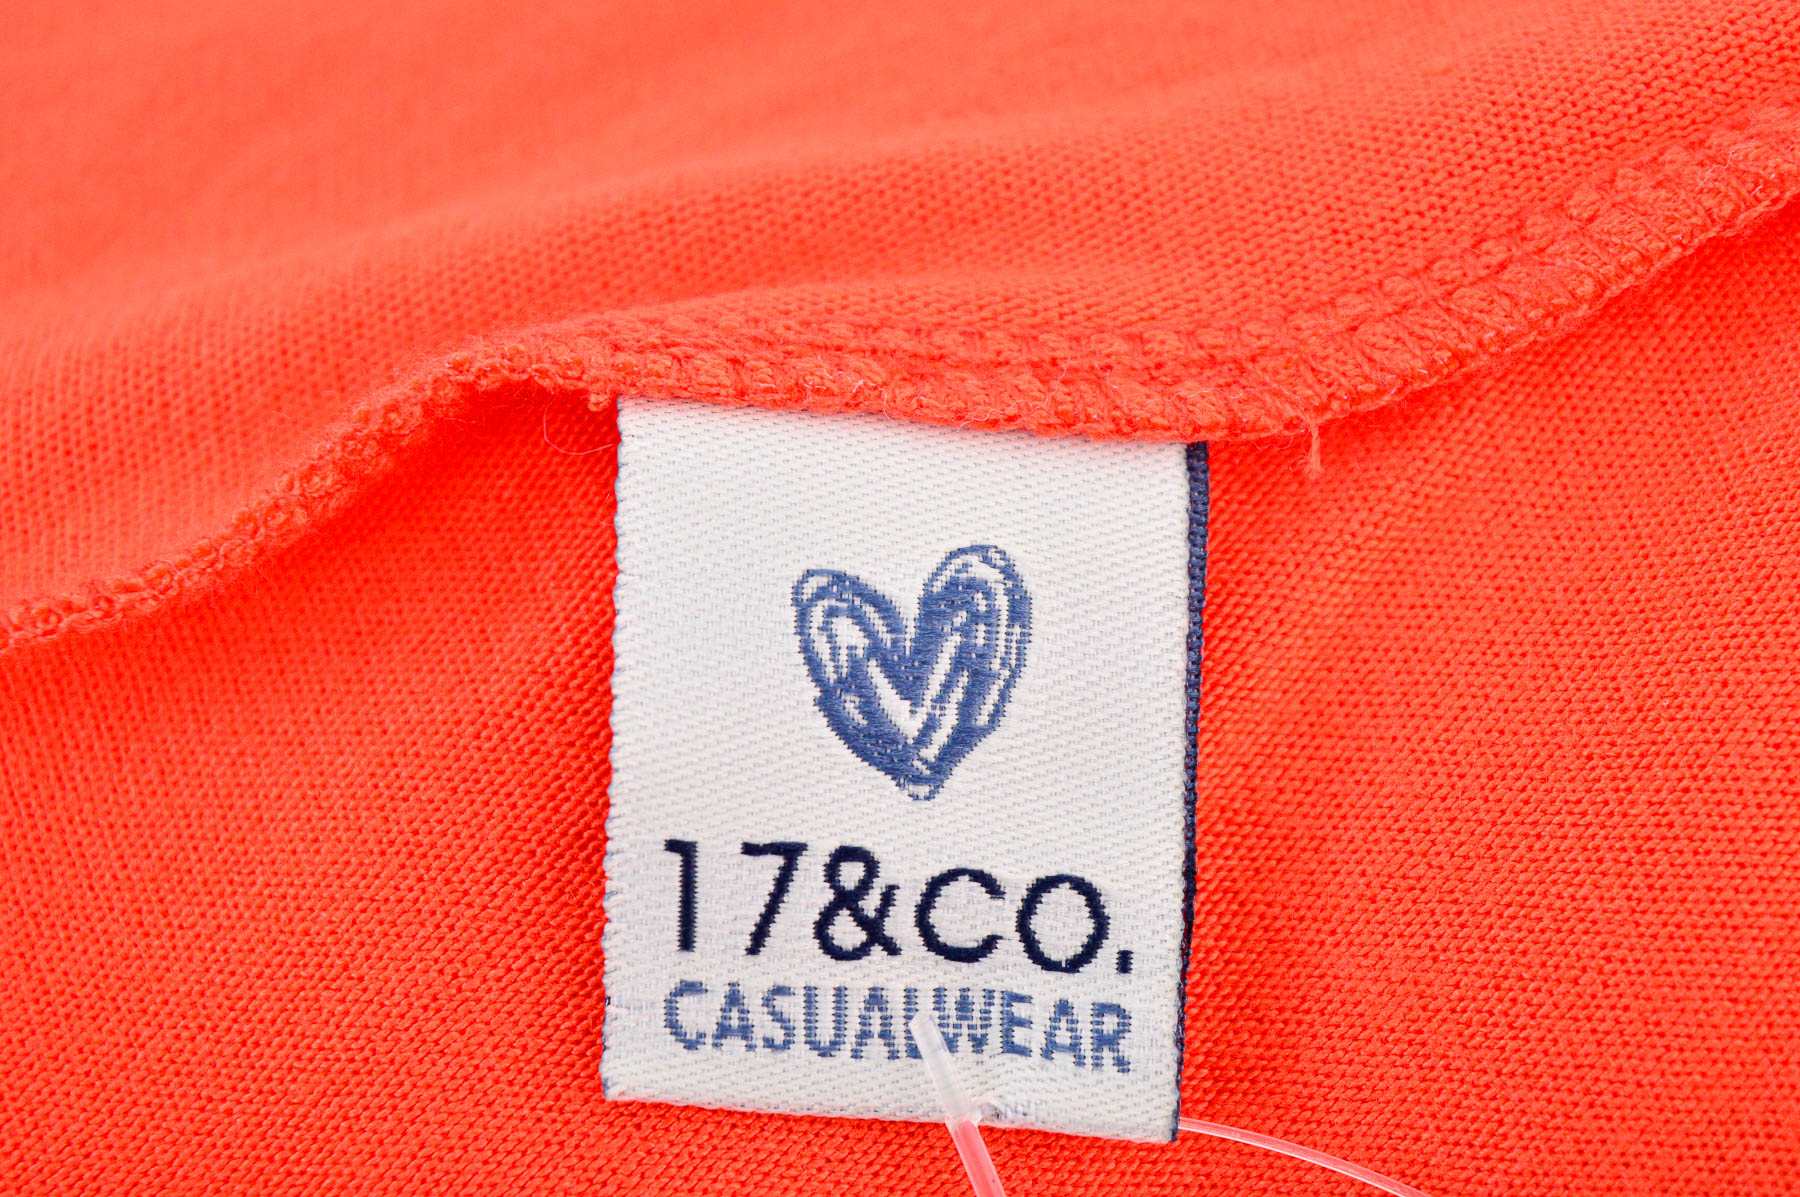 Women's cardigan - 17&CO. CASUALWEAR - 2